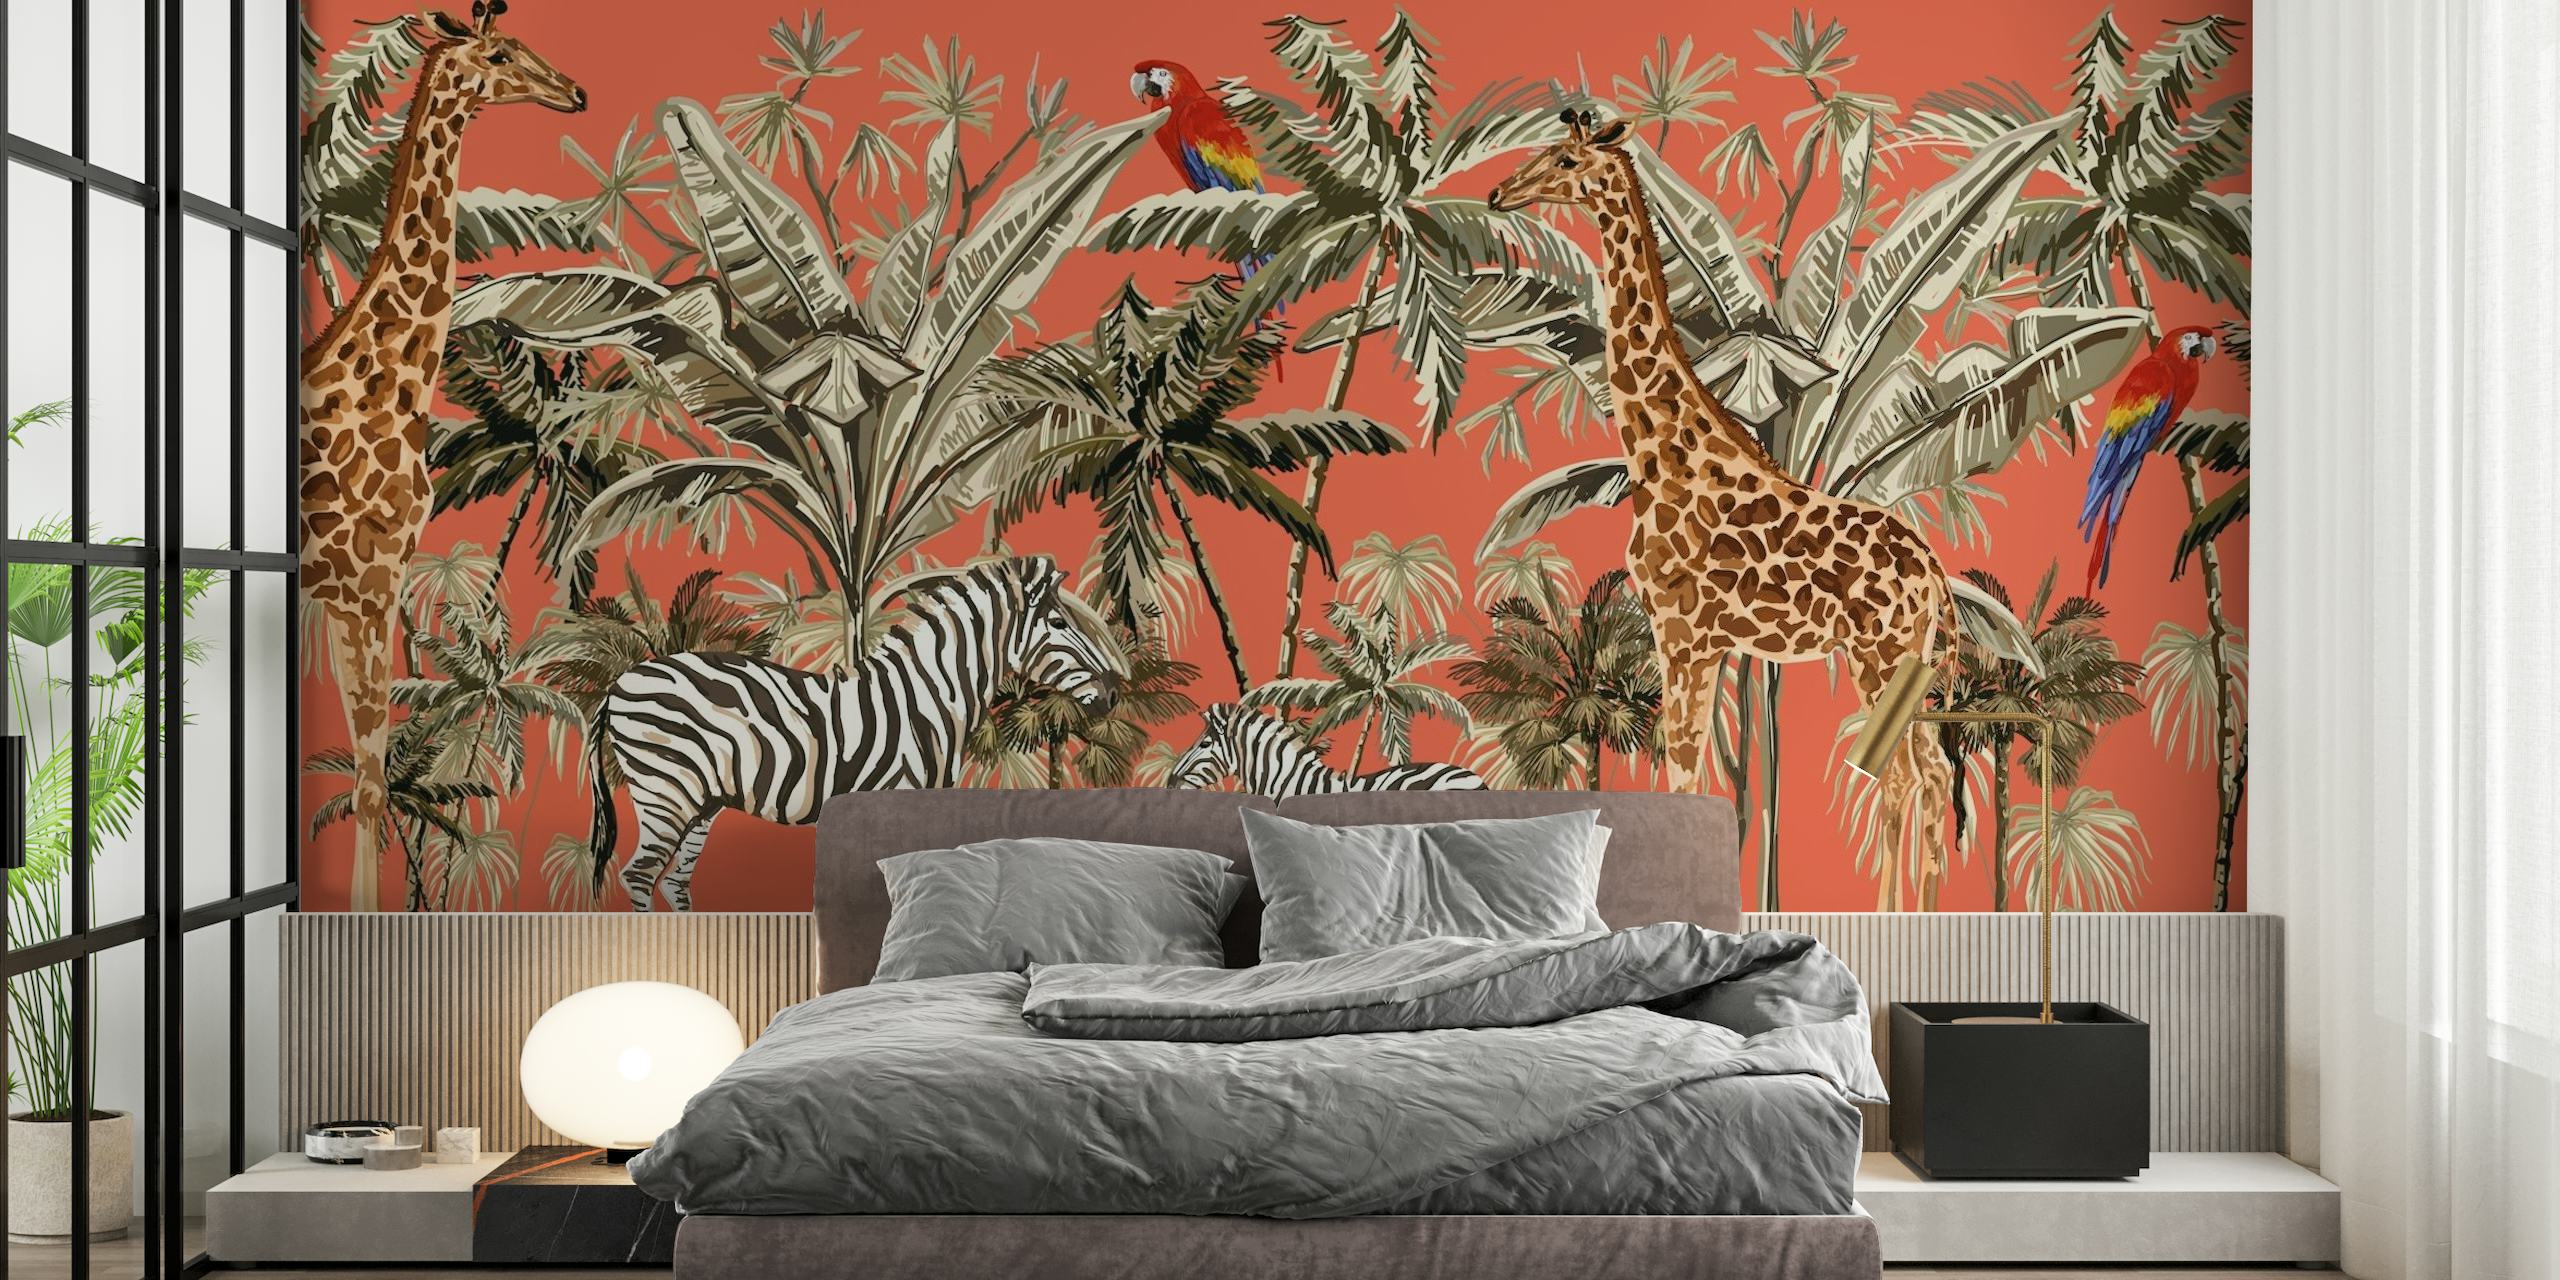 Fototapeta inspirovaná safari se zebrami, žirafami a ptáky na oranžovém pozadí